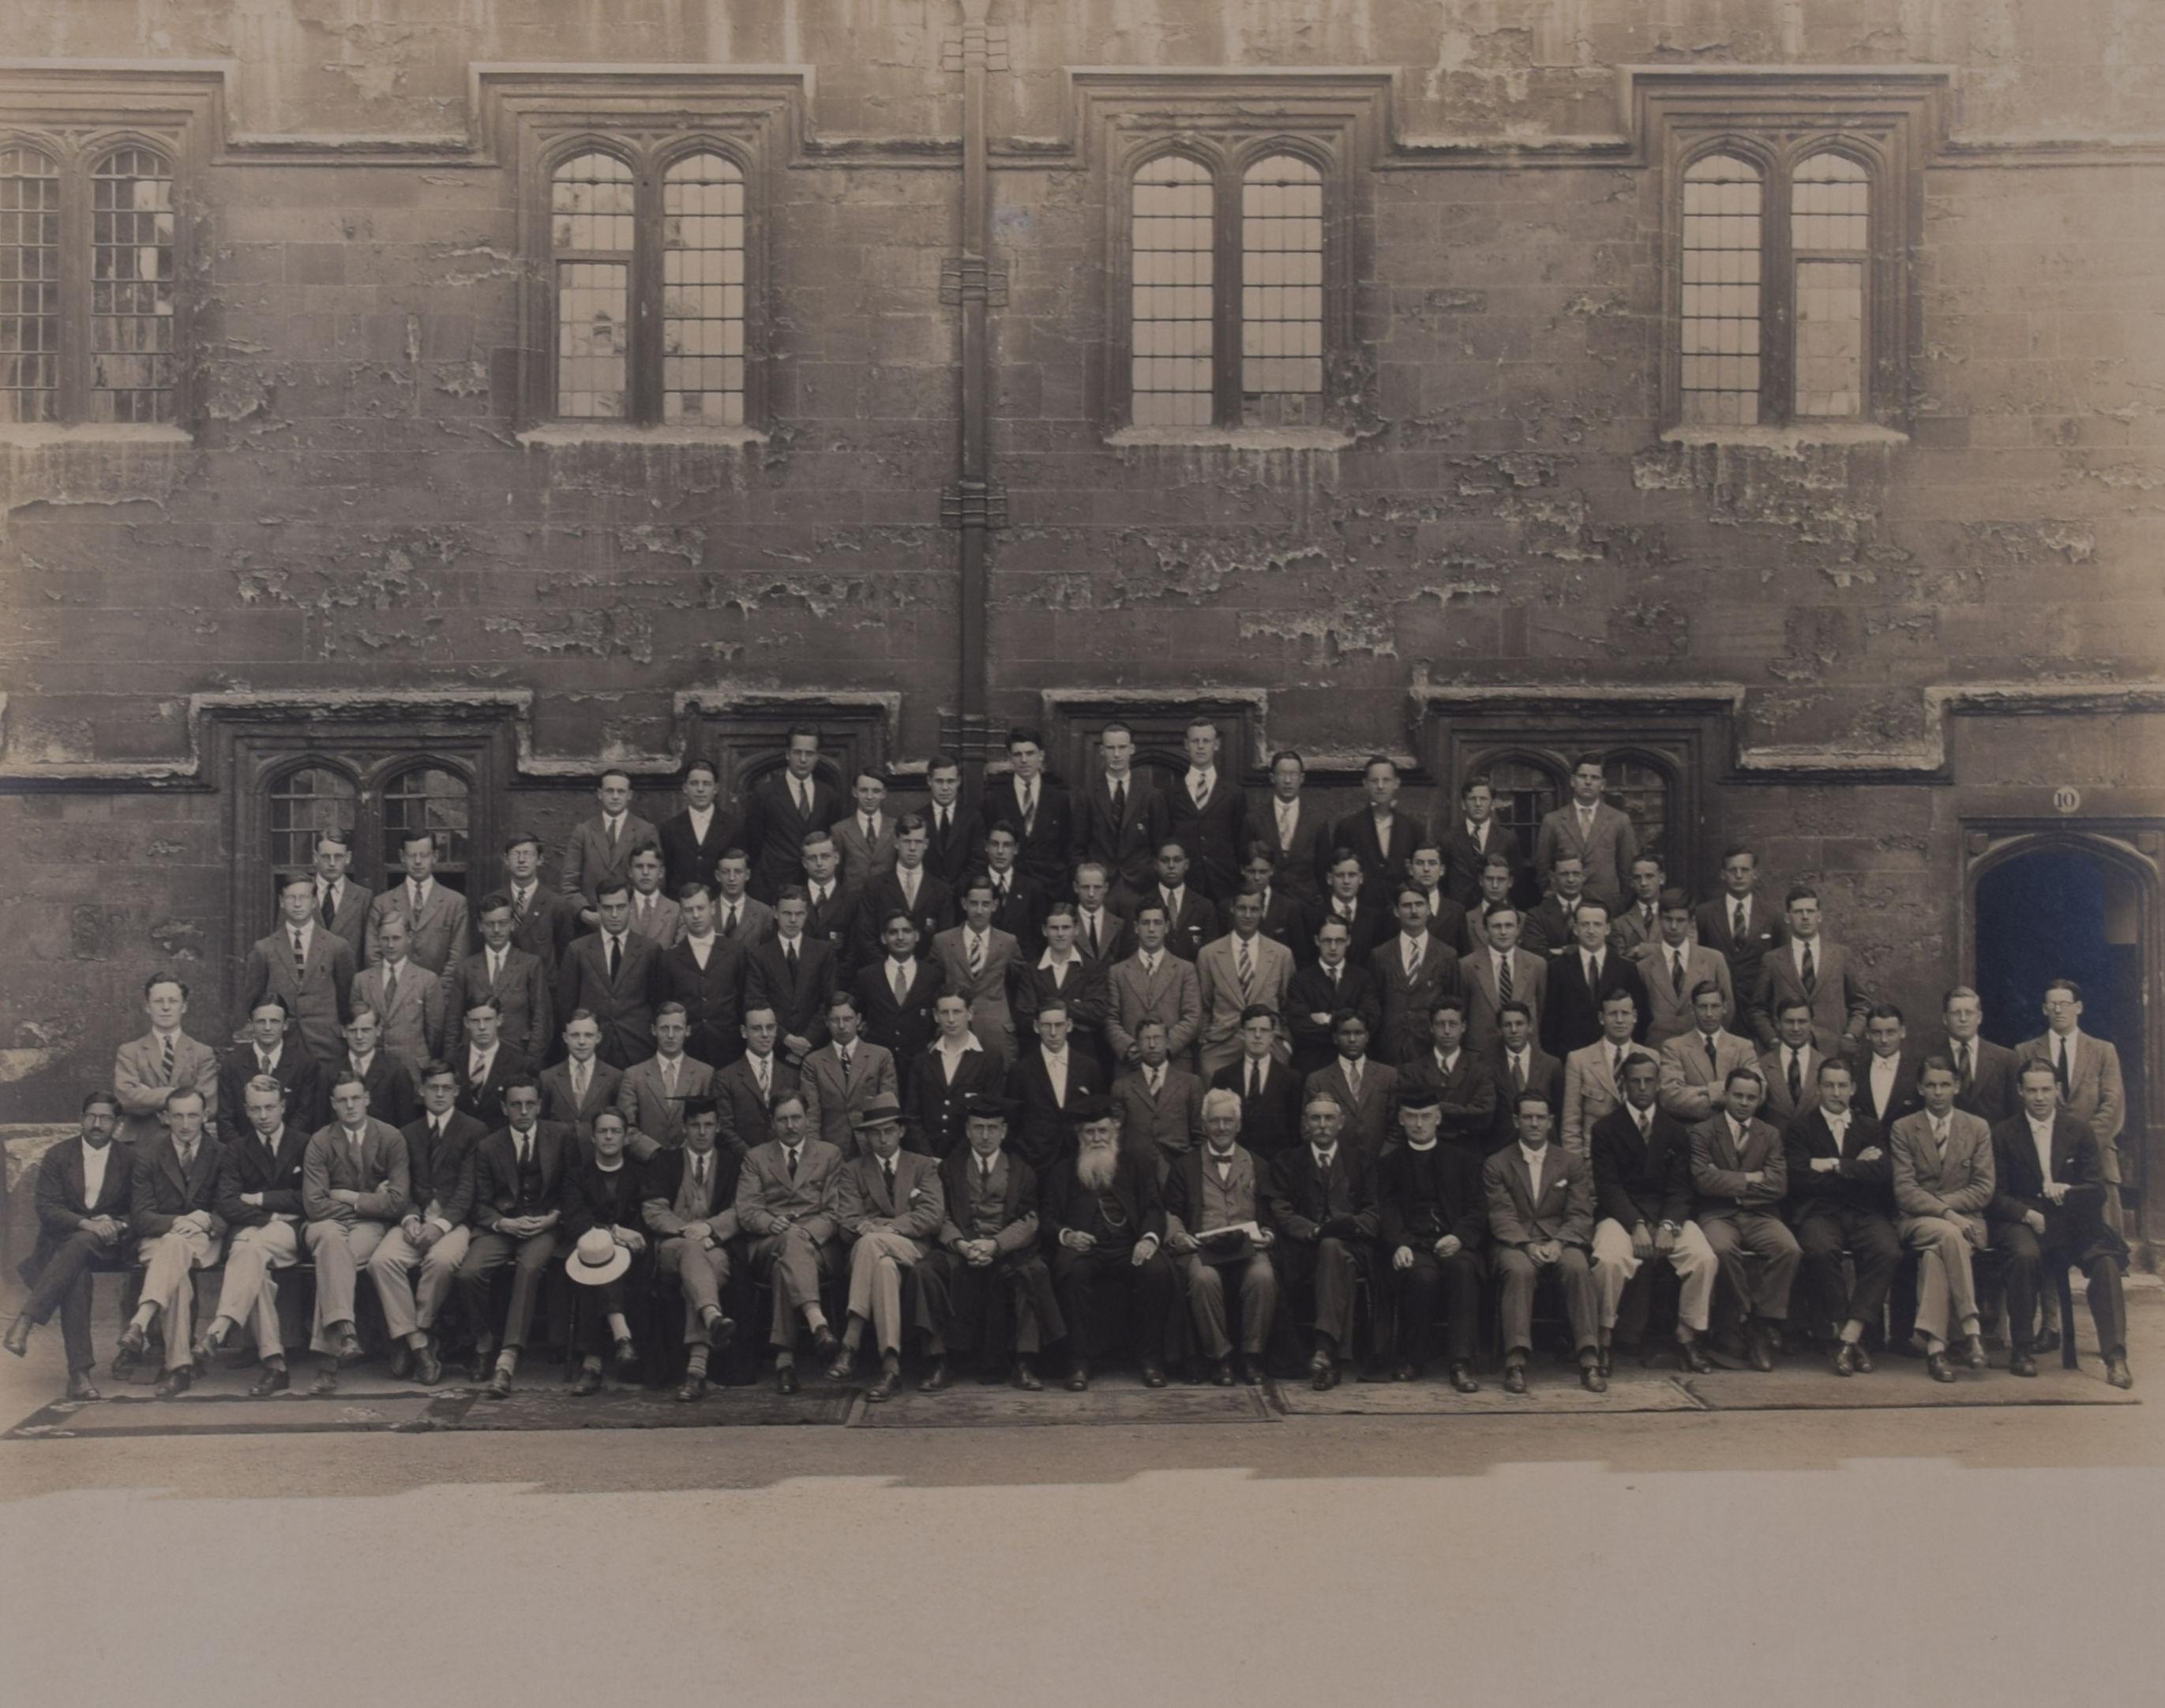 St John's College, Oxford, Fotografie von Hills & Saunders, 1920er Jahre – Photograph von Unknown